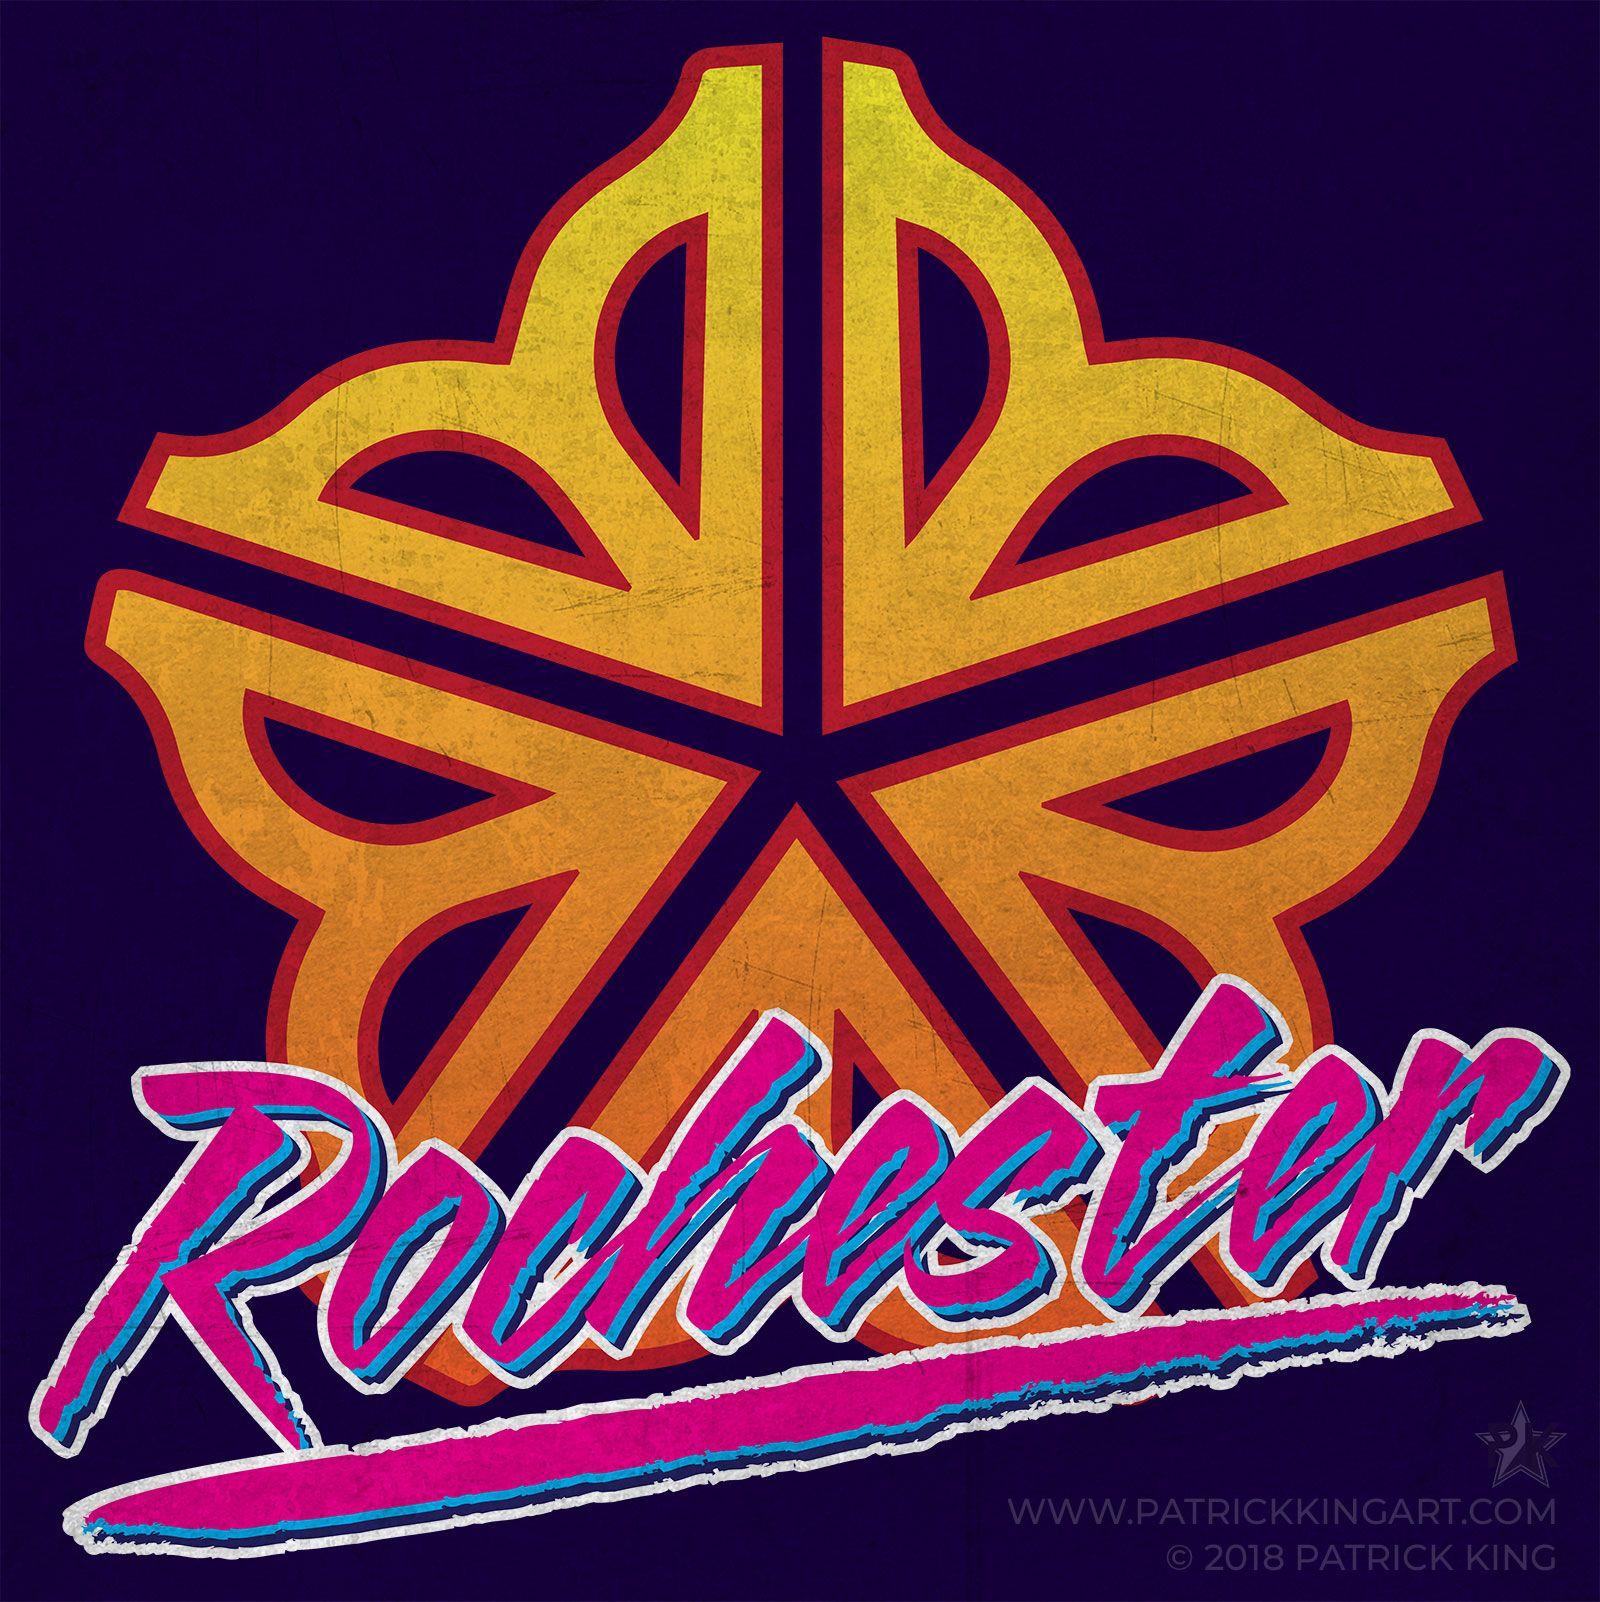 Rochester Logo - Retro Rochester Logo [x-post r/outrun] : Rochester